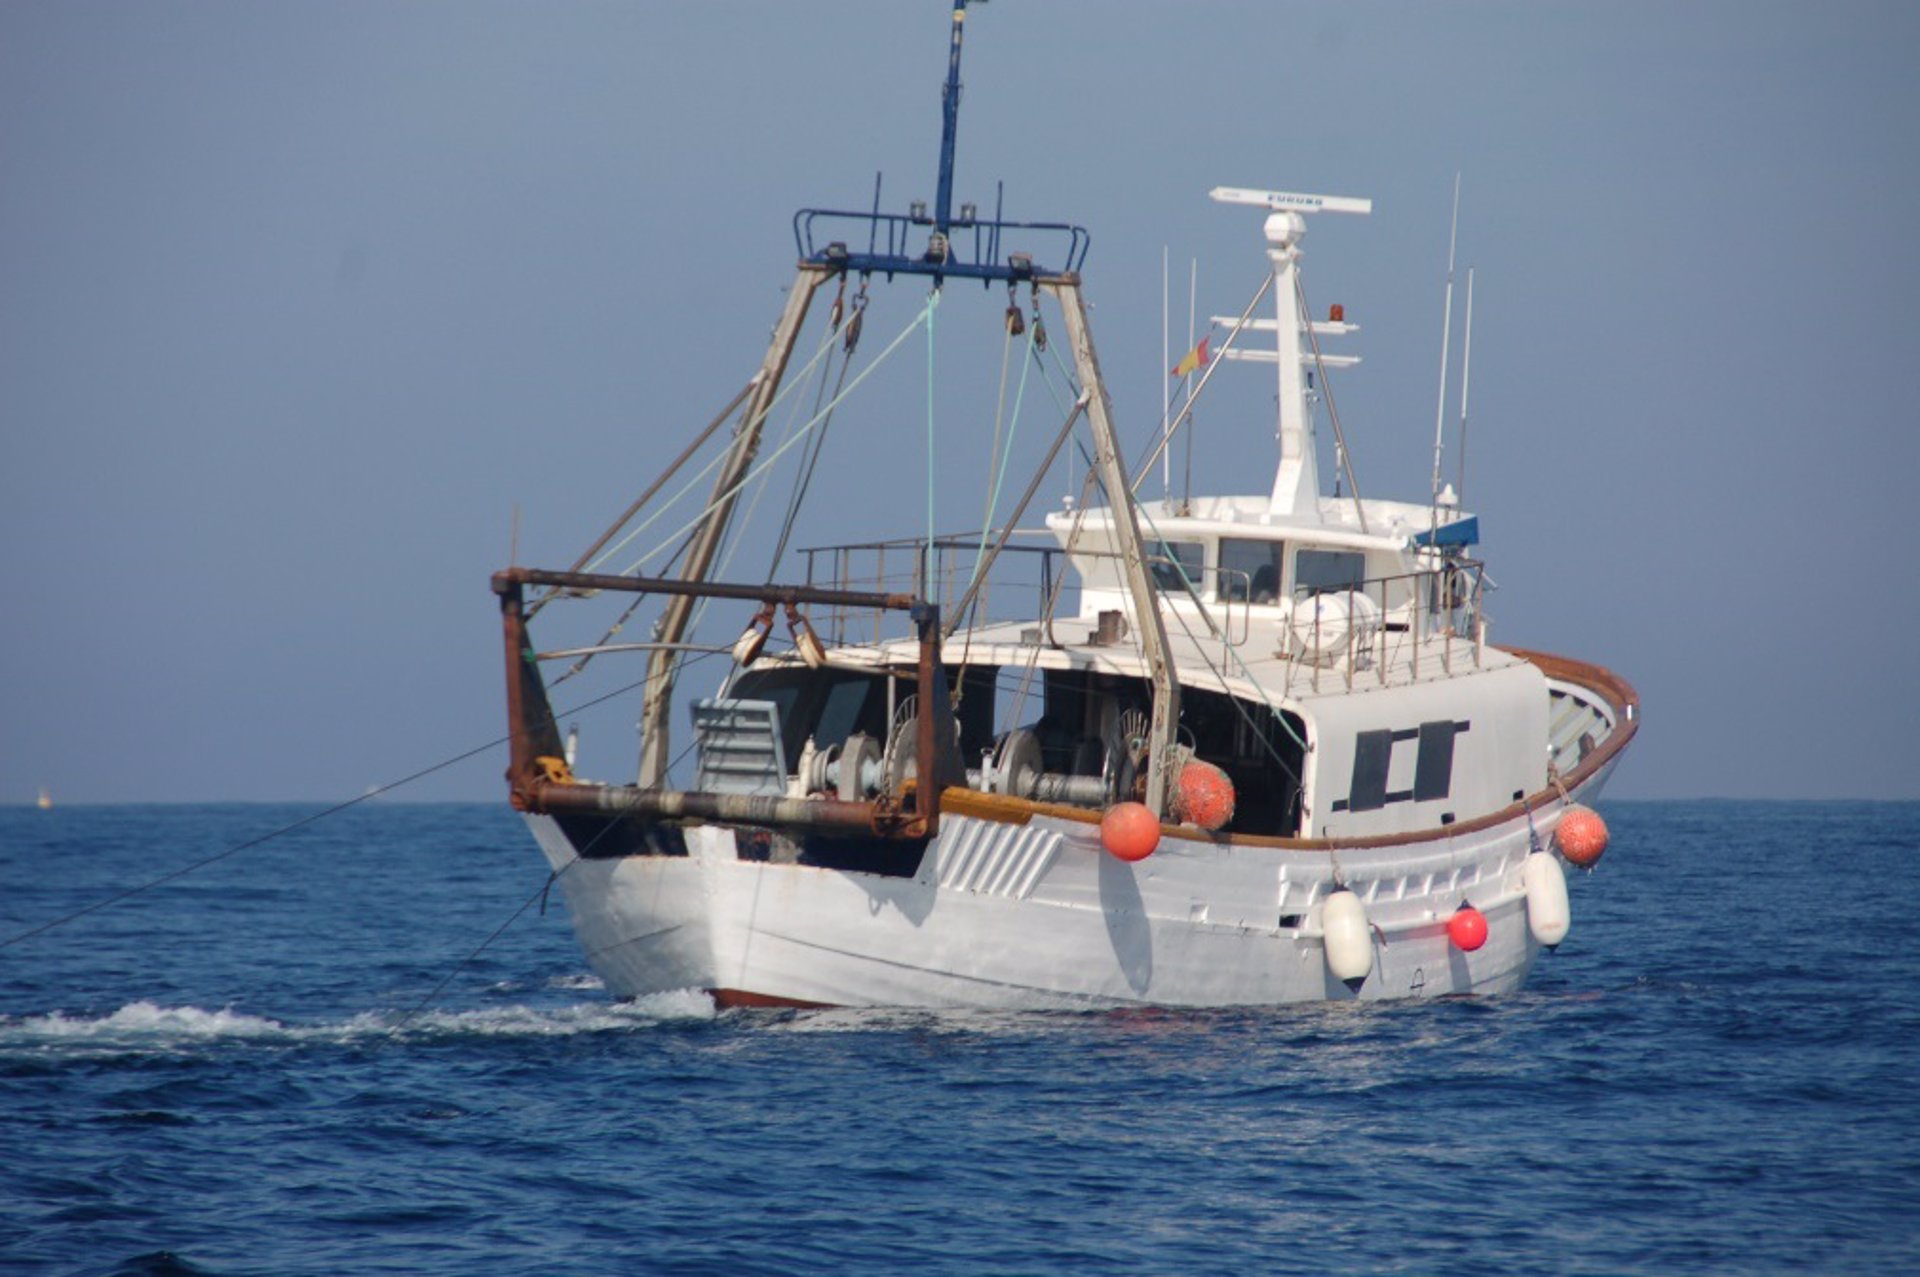 actualidad náutica, noticias náuticas, pesca, pescadores, huelga pescadores, Federación balear cofra